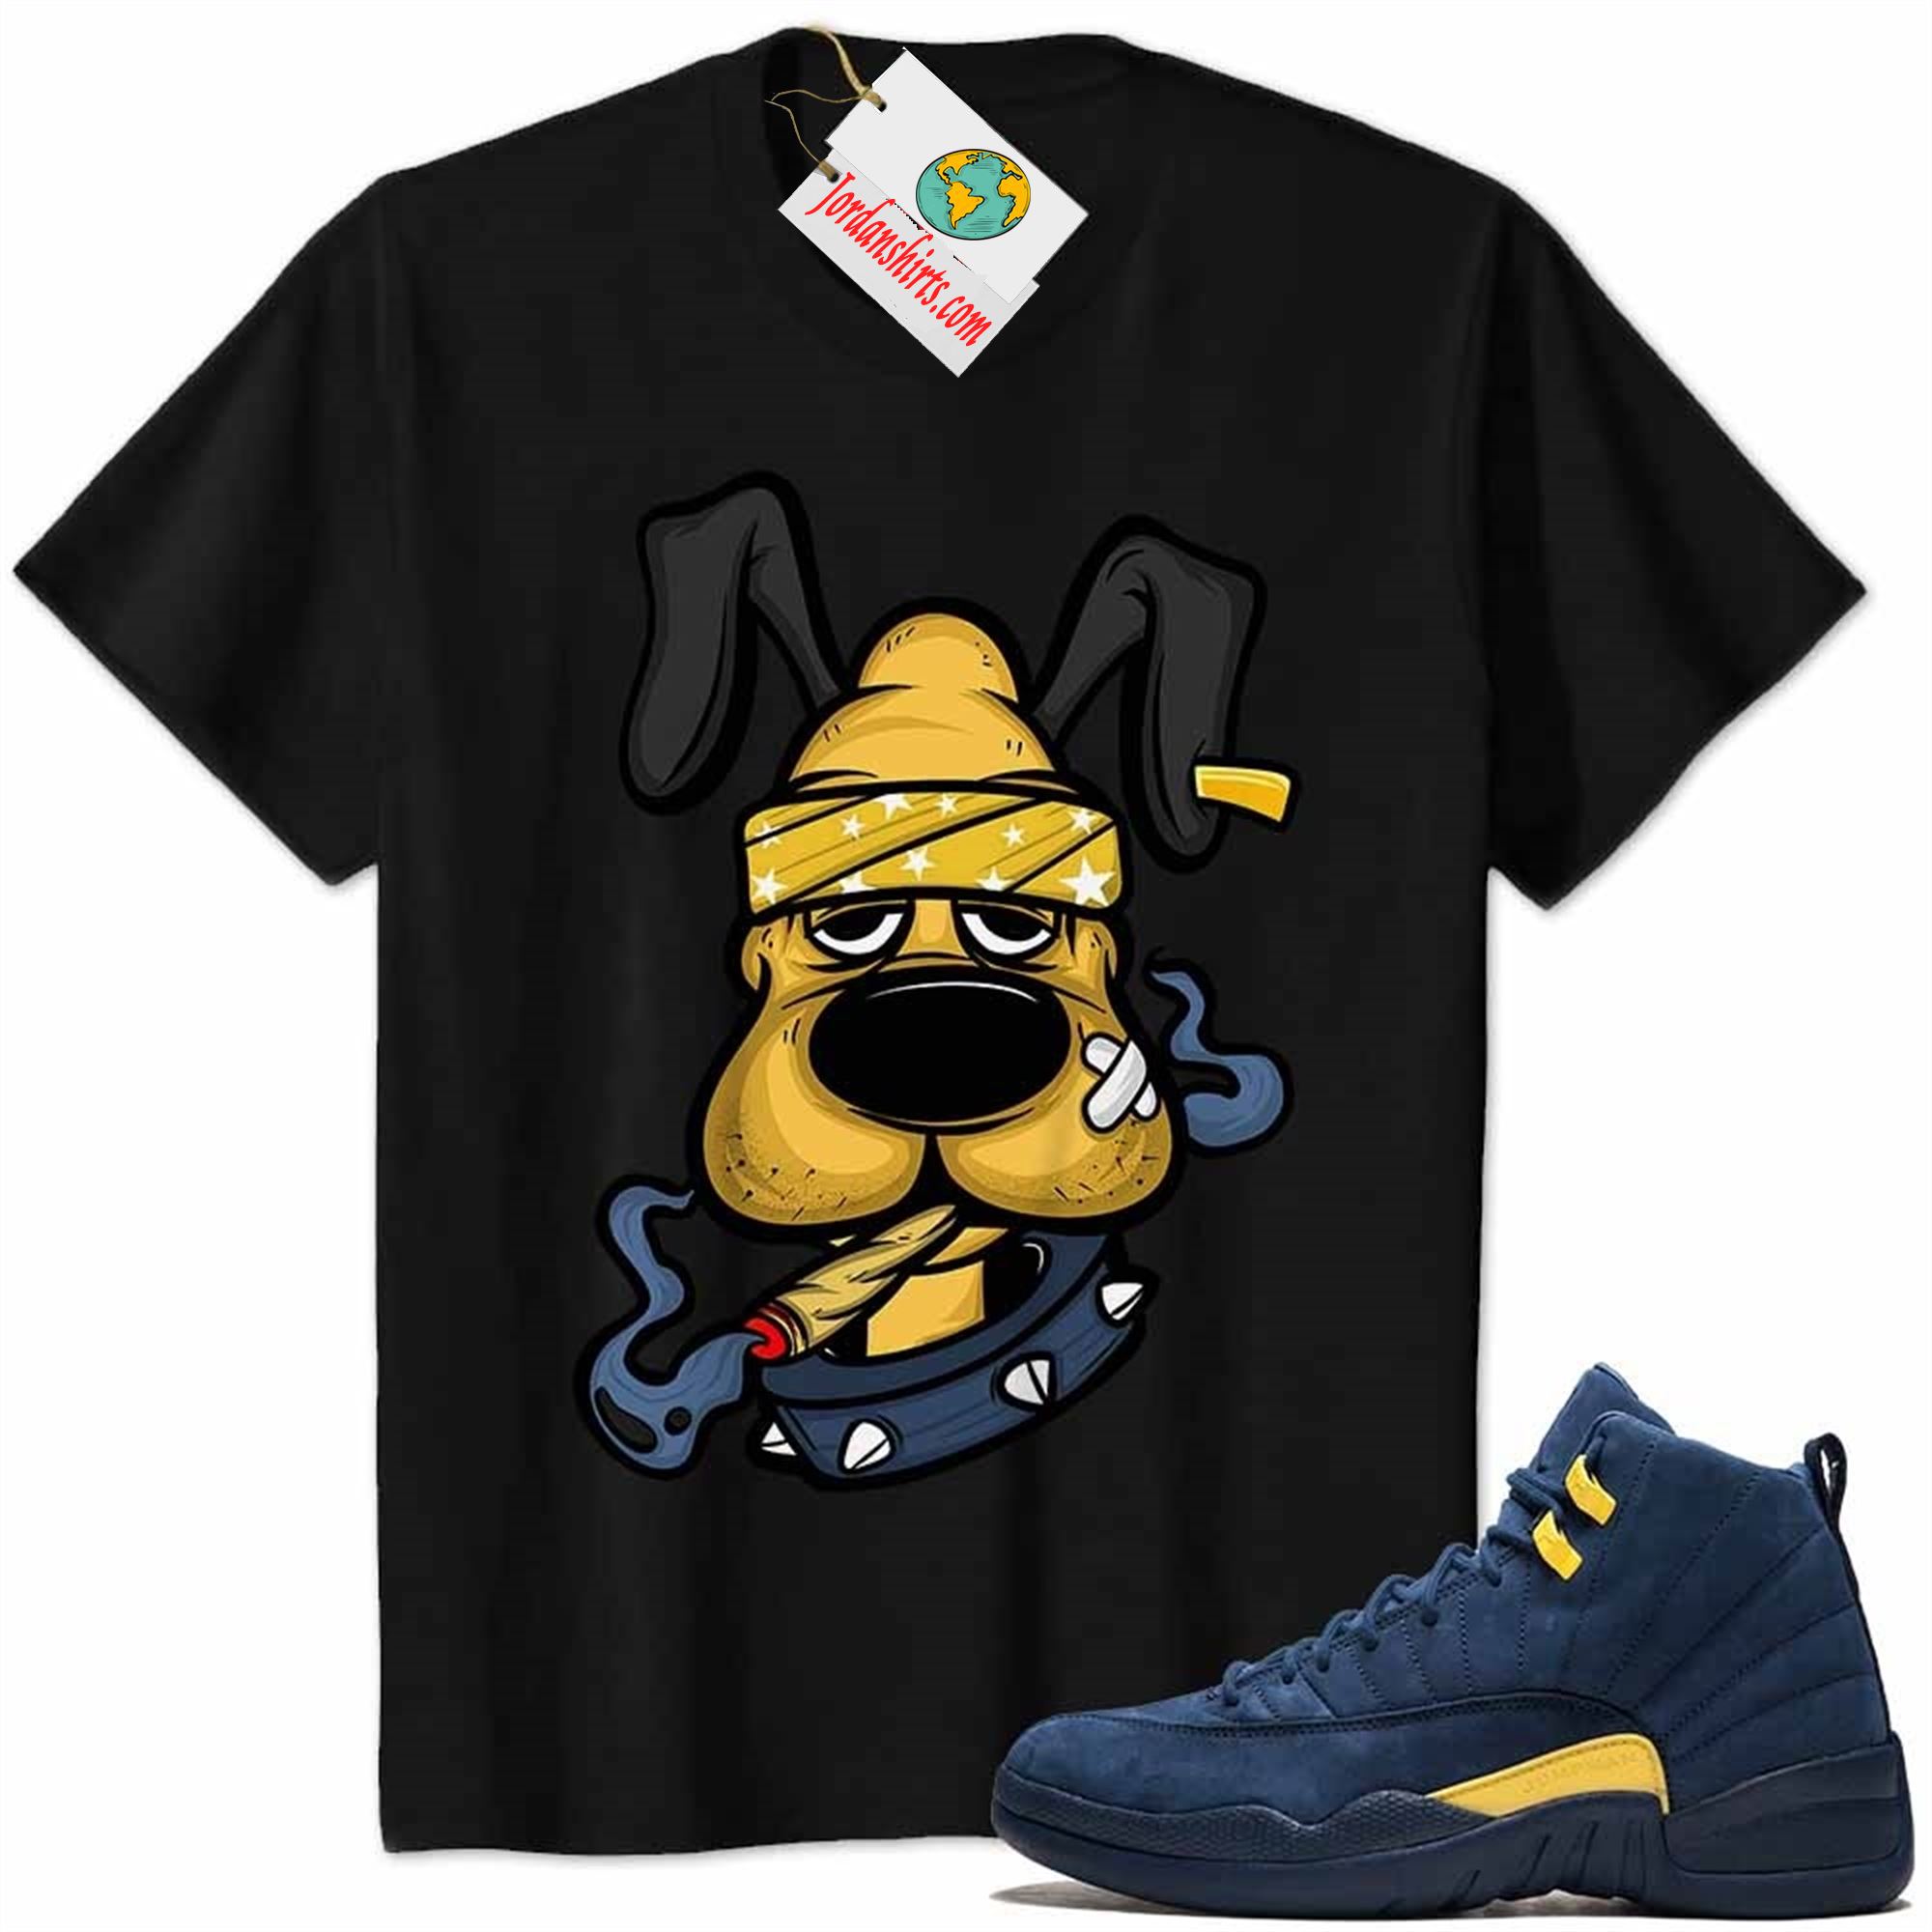 Jordan 12 Shirt, Gangster Pluto Smoke Weed Black Air Jordan 12 Michigan 12s Plus Size Up To 5xl